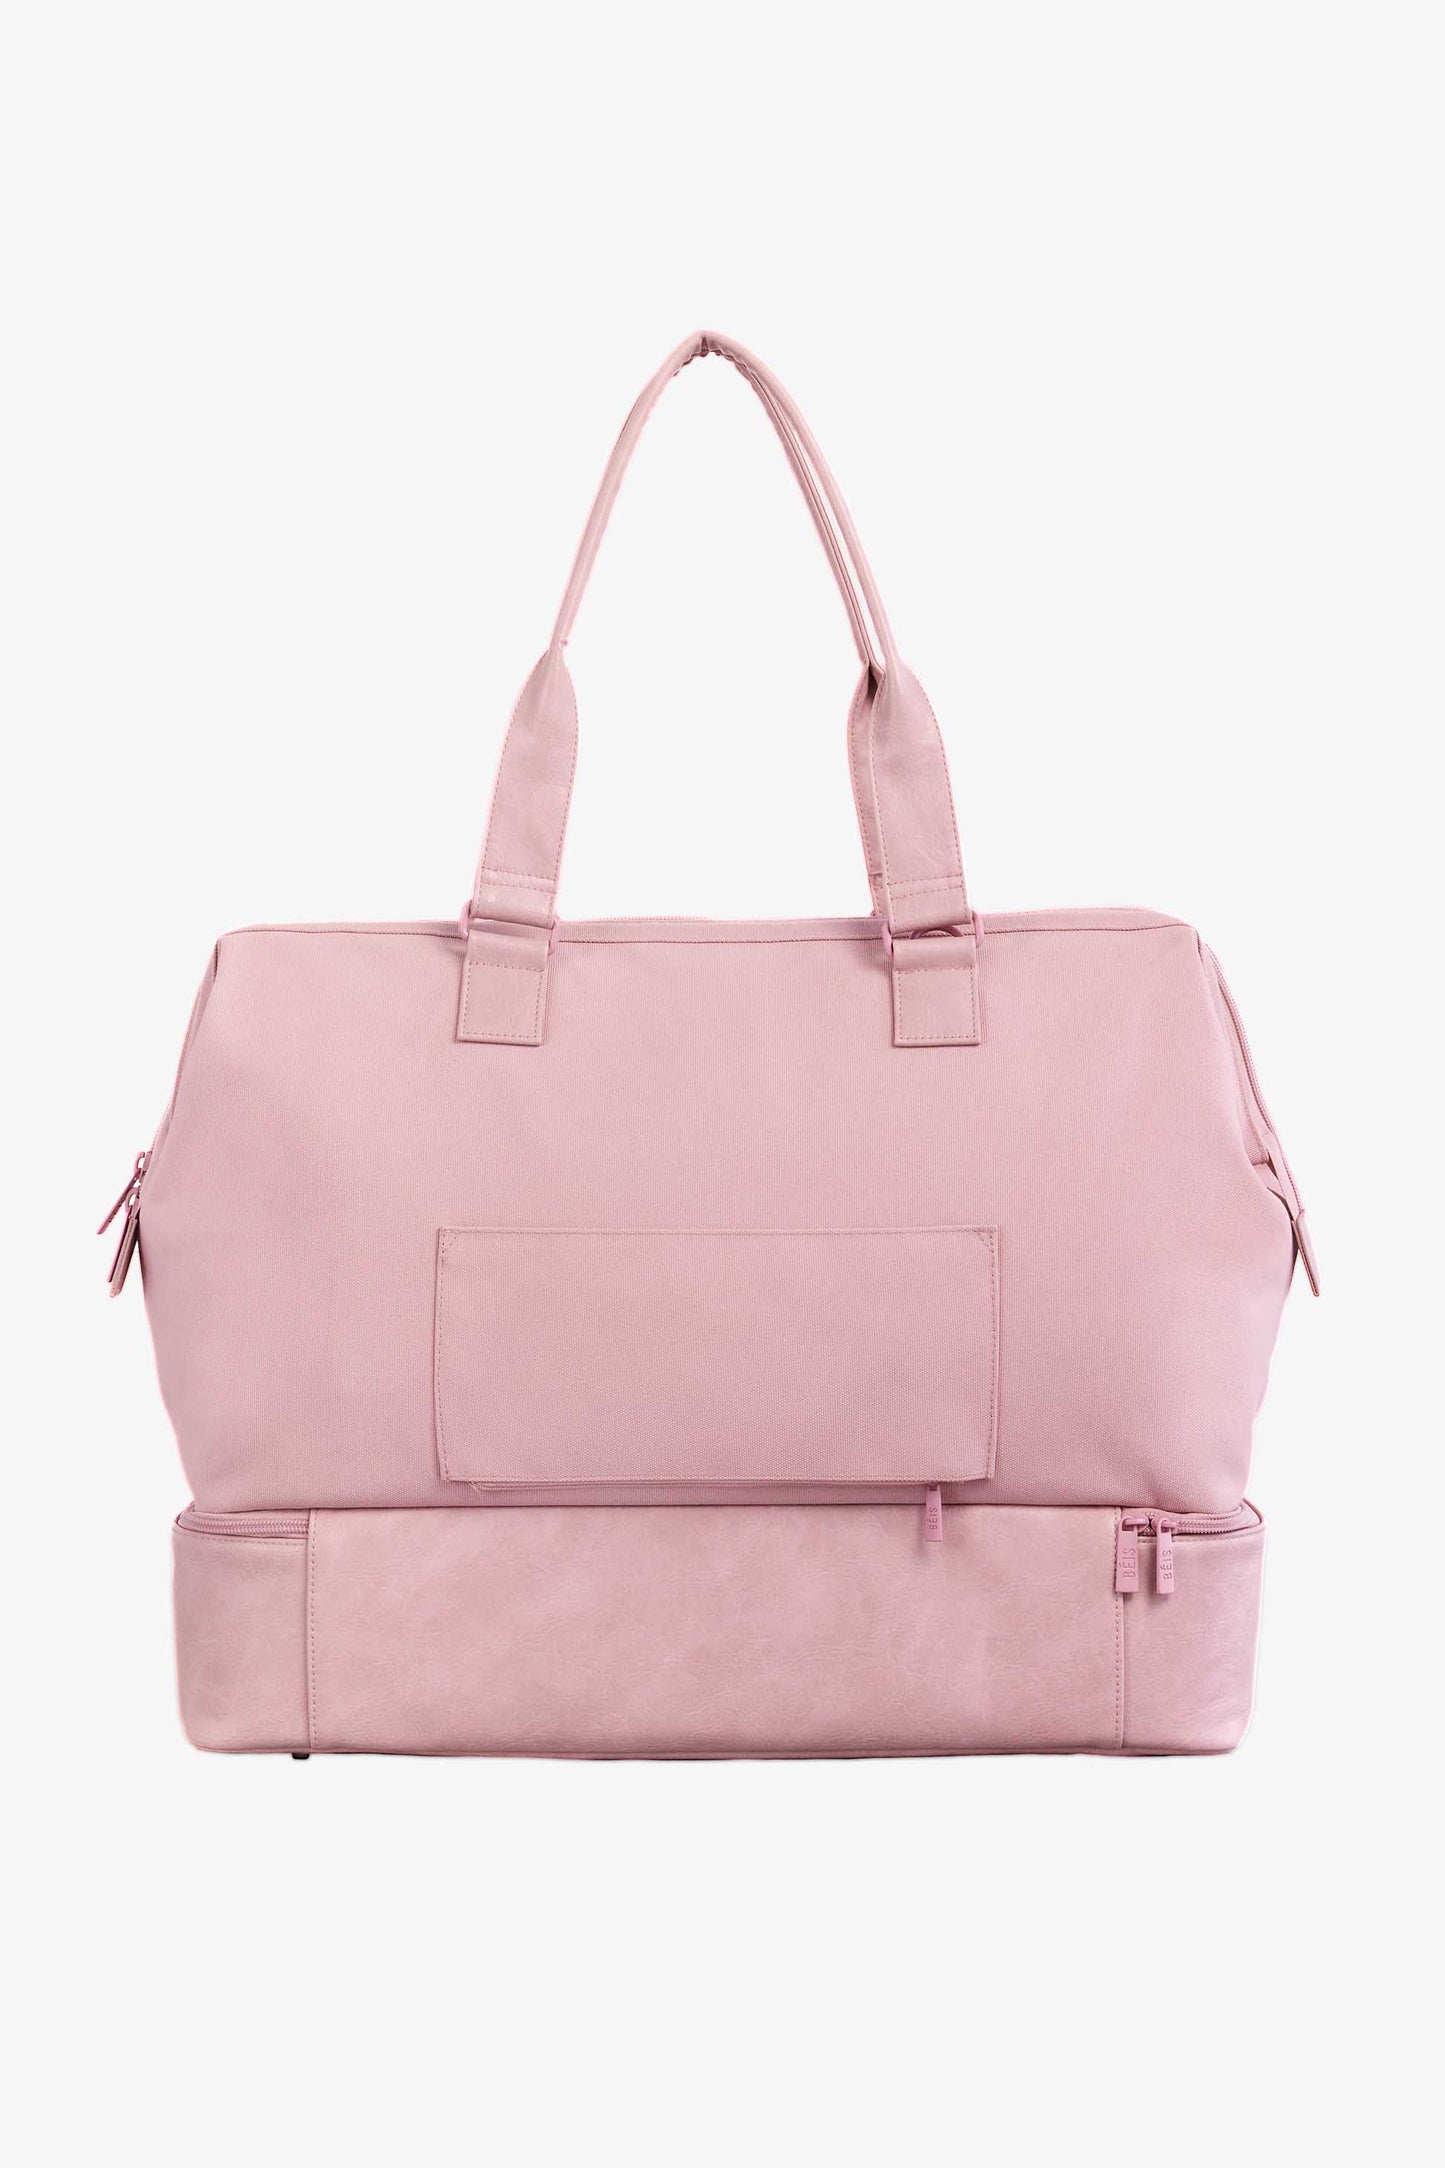 BÉIS 'The Weekender' in Atlas Pink - Pink Weekend Bag & Overnight Bag